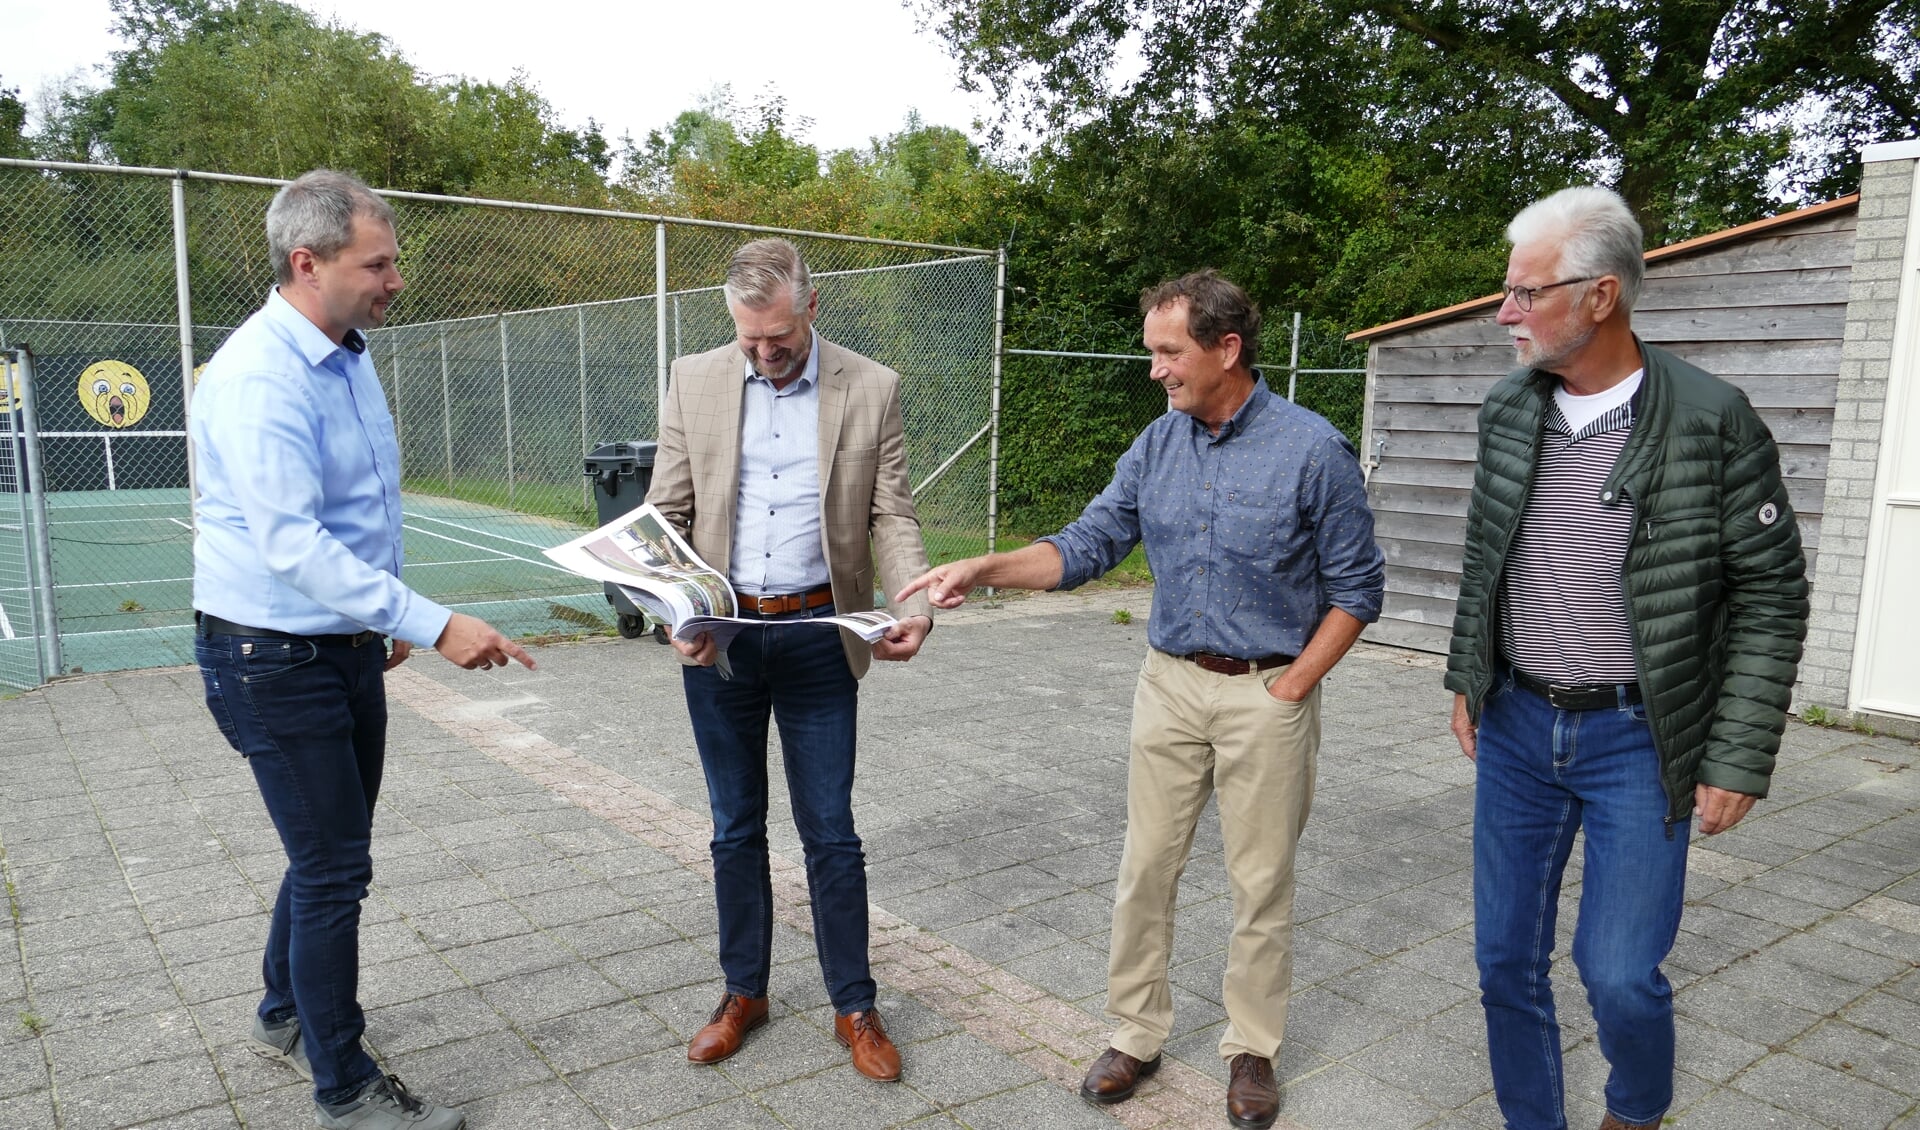 F.l.n.r.: Rienk Boskma, wethâlder Gerben Wiersma, Durk Holwerda en Henk Kemper.